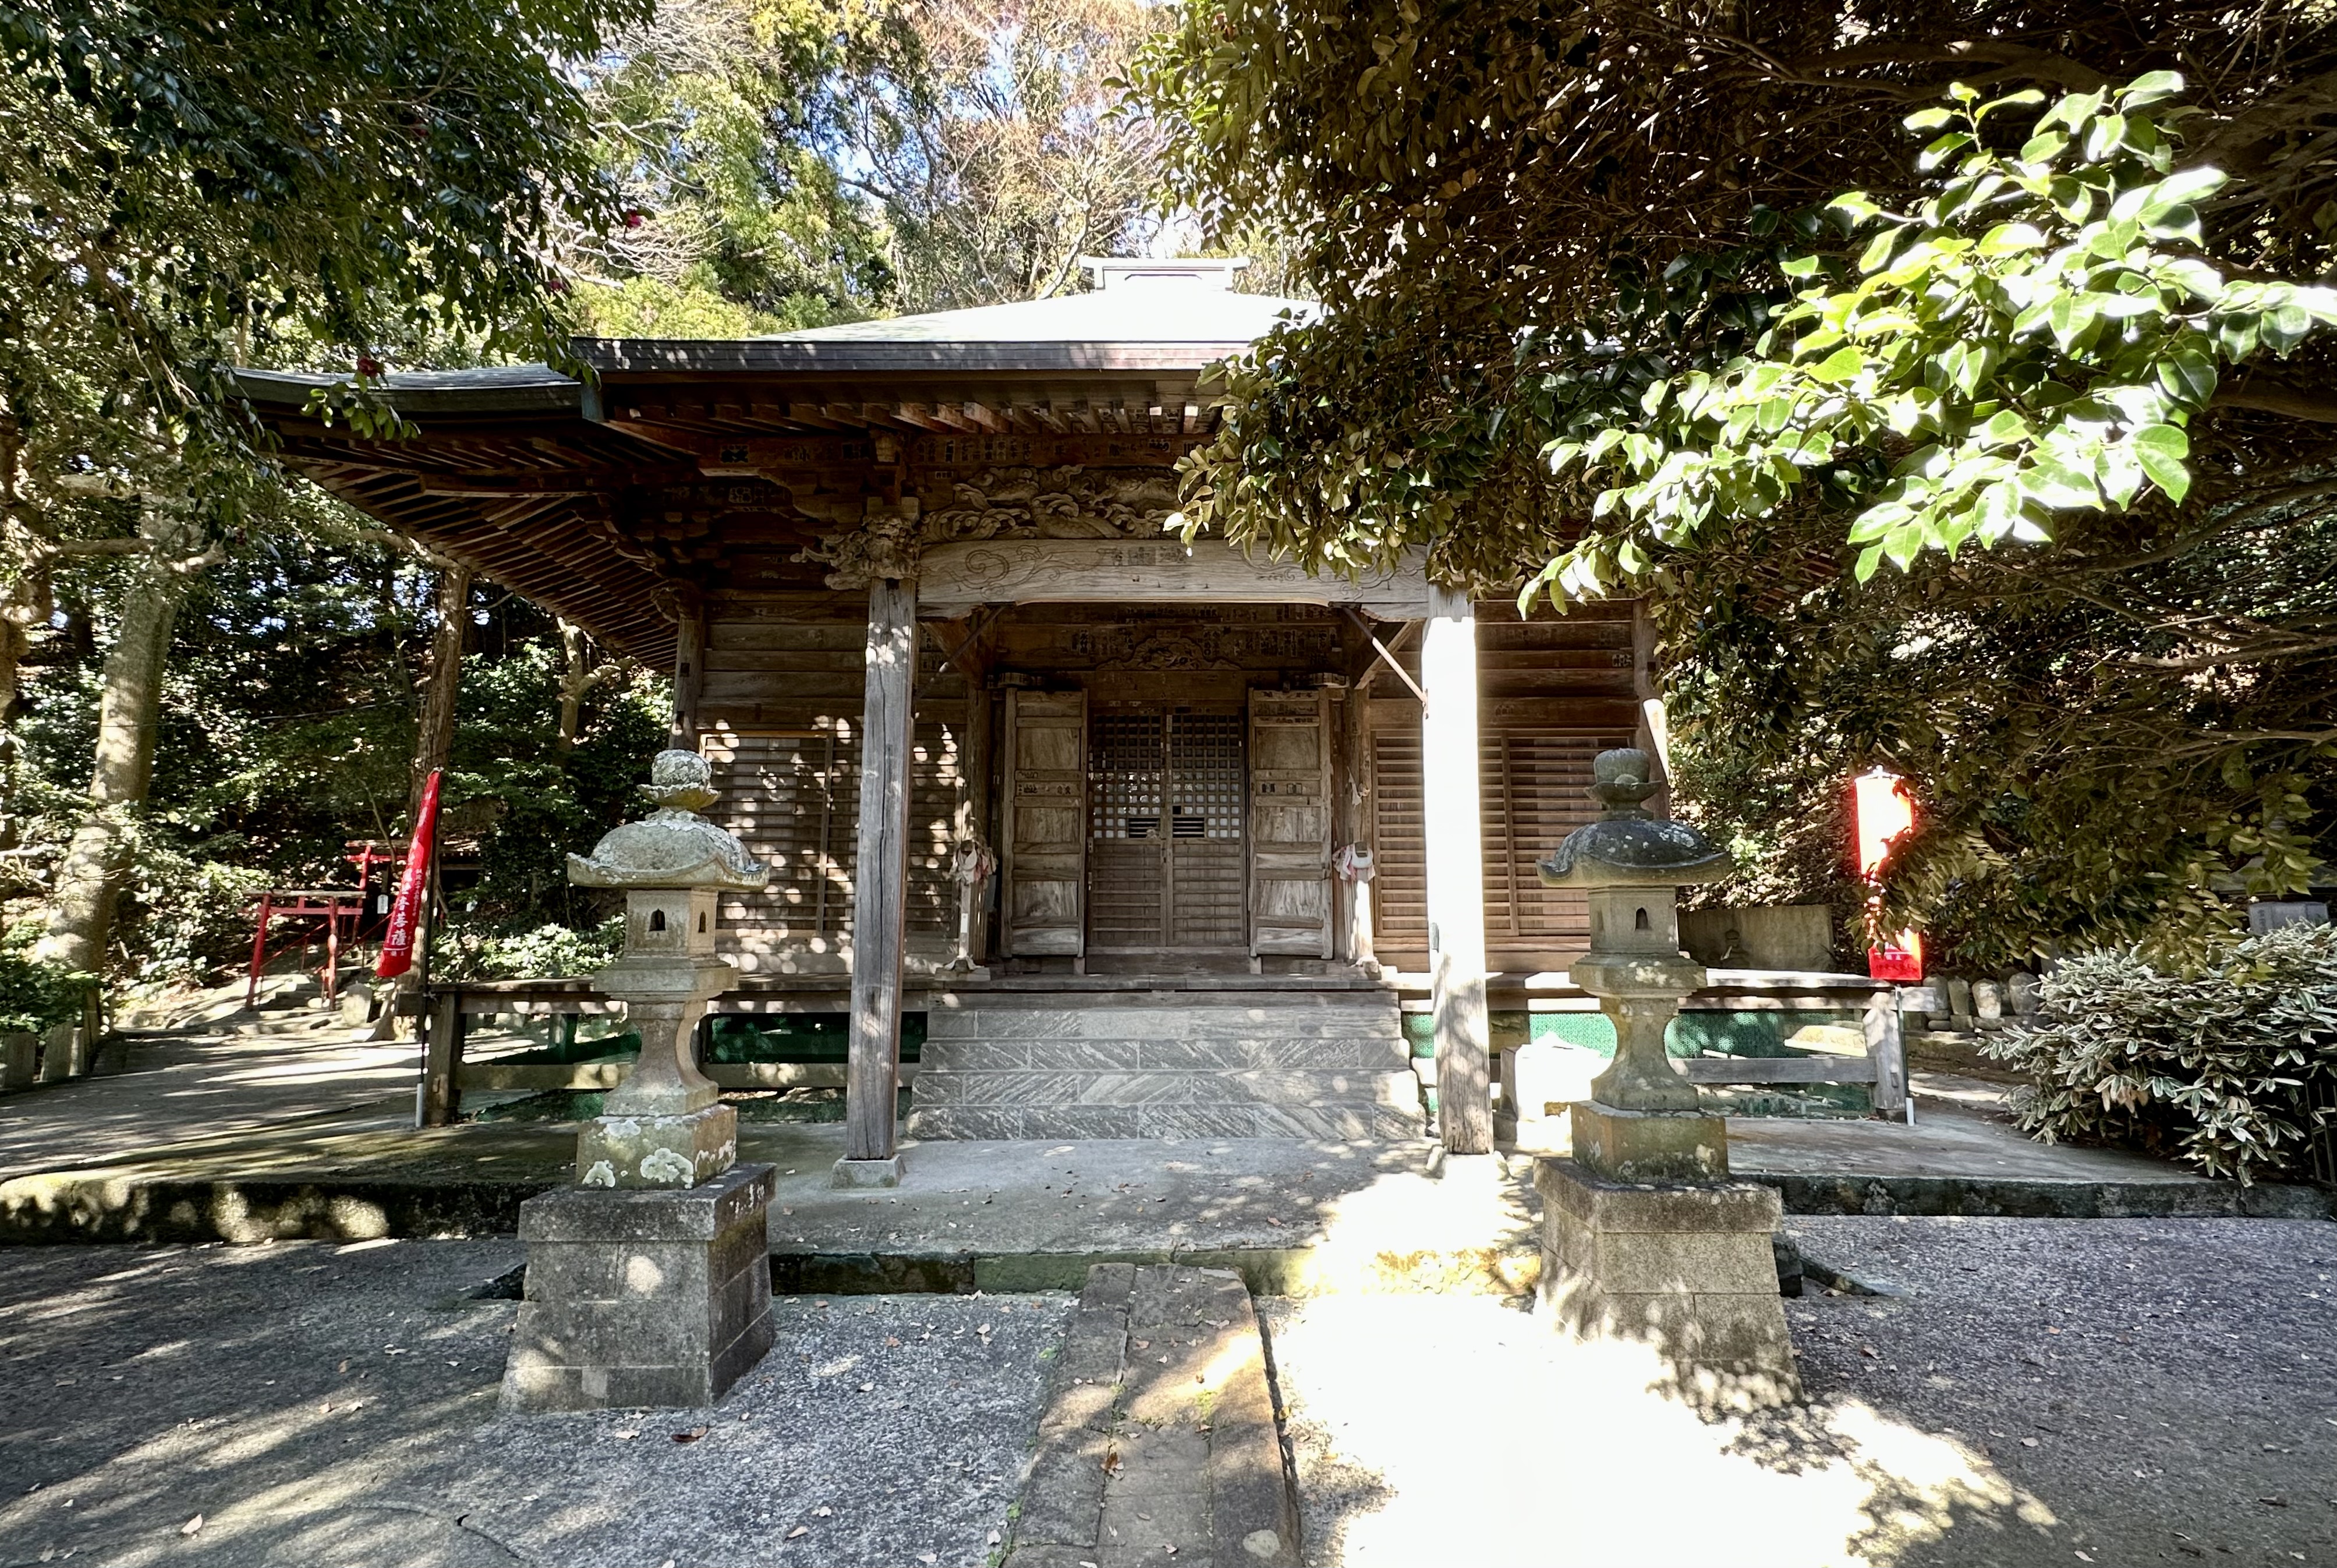 Chính điện cũ của chùa Ganden-ji